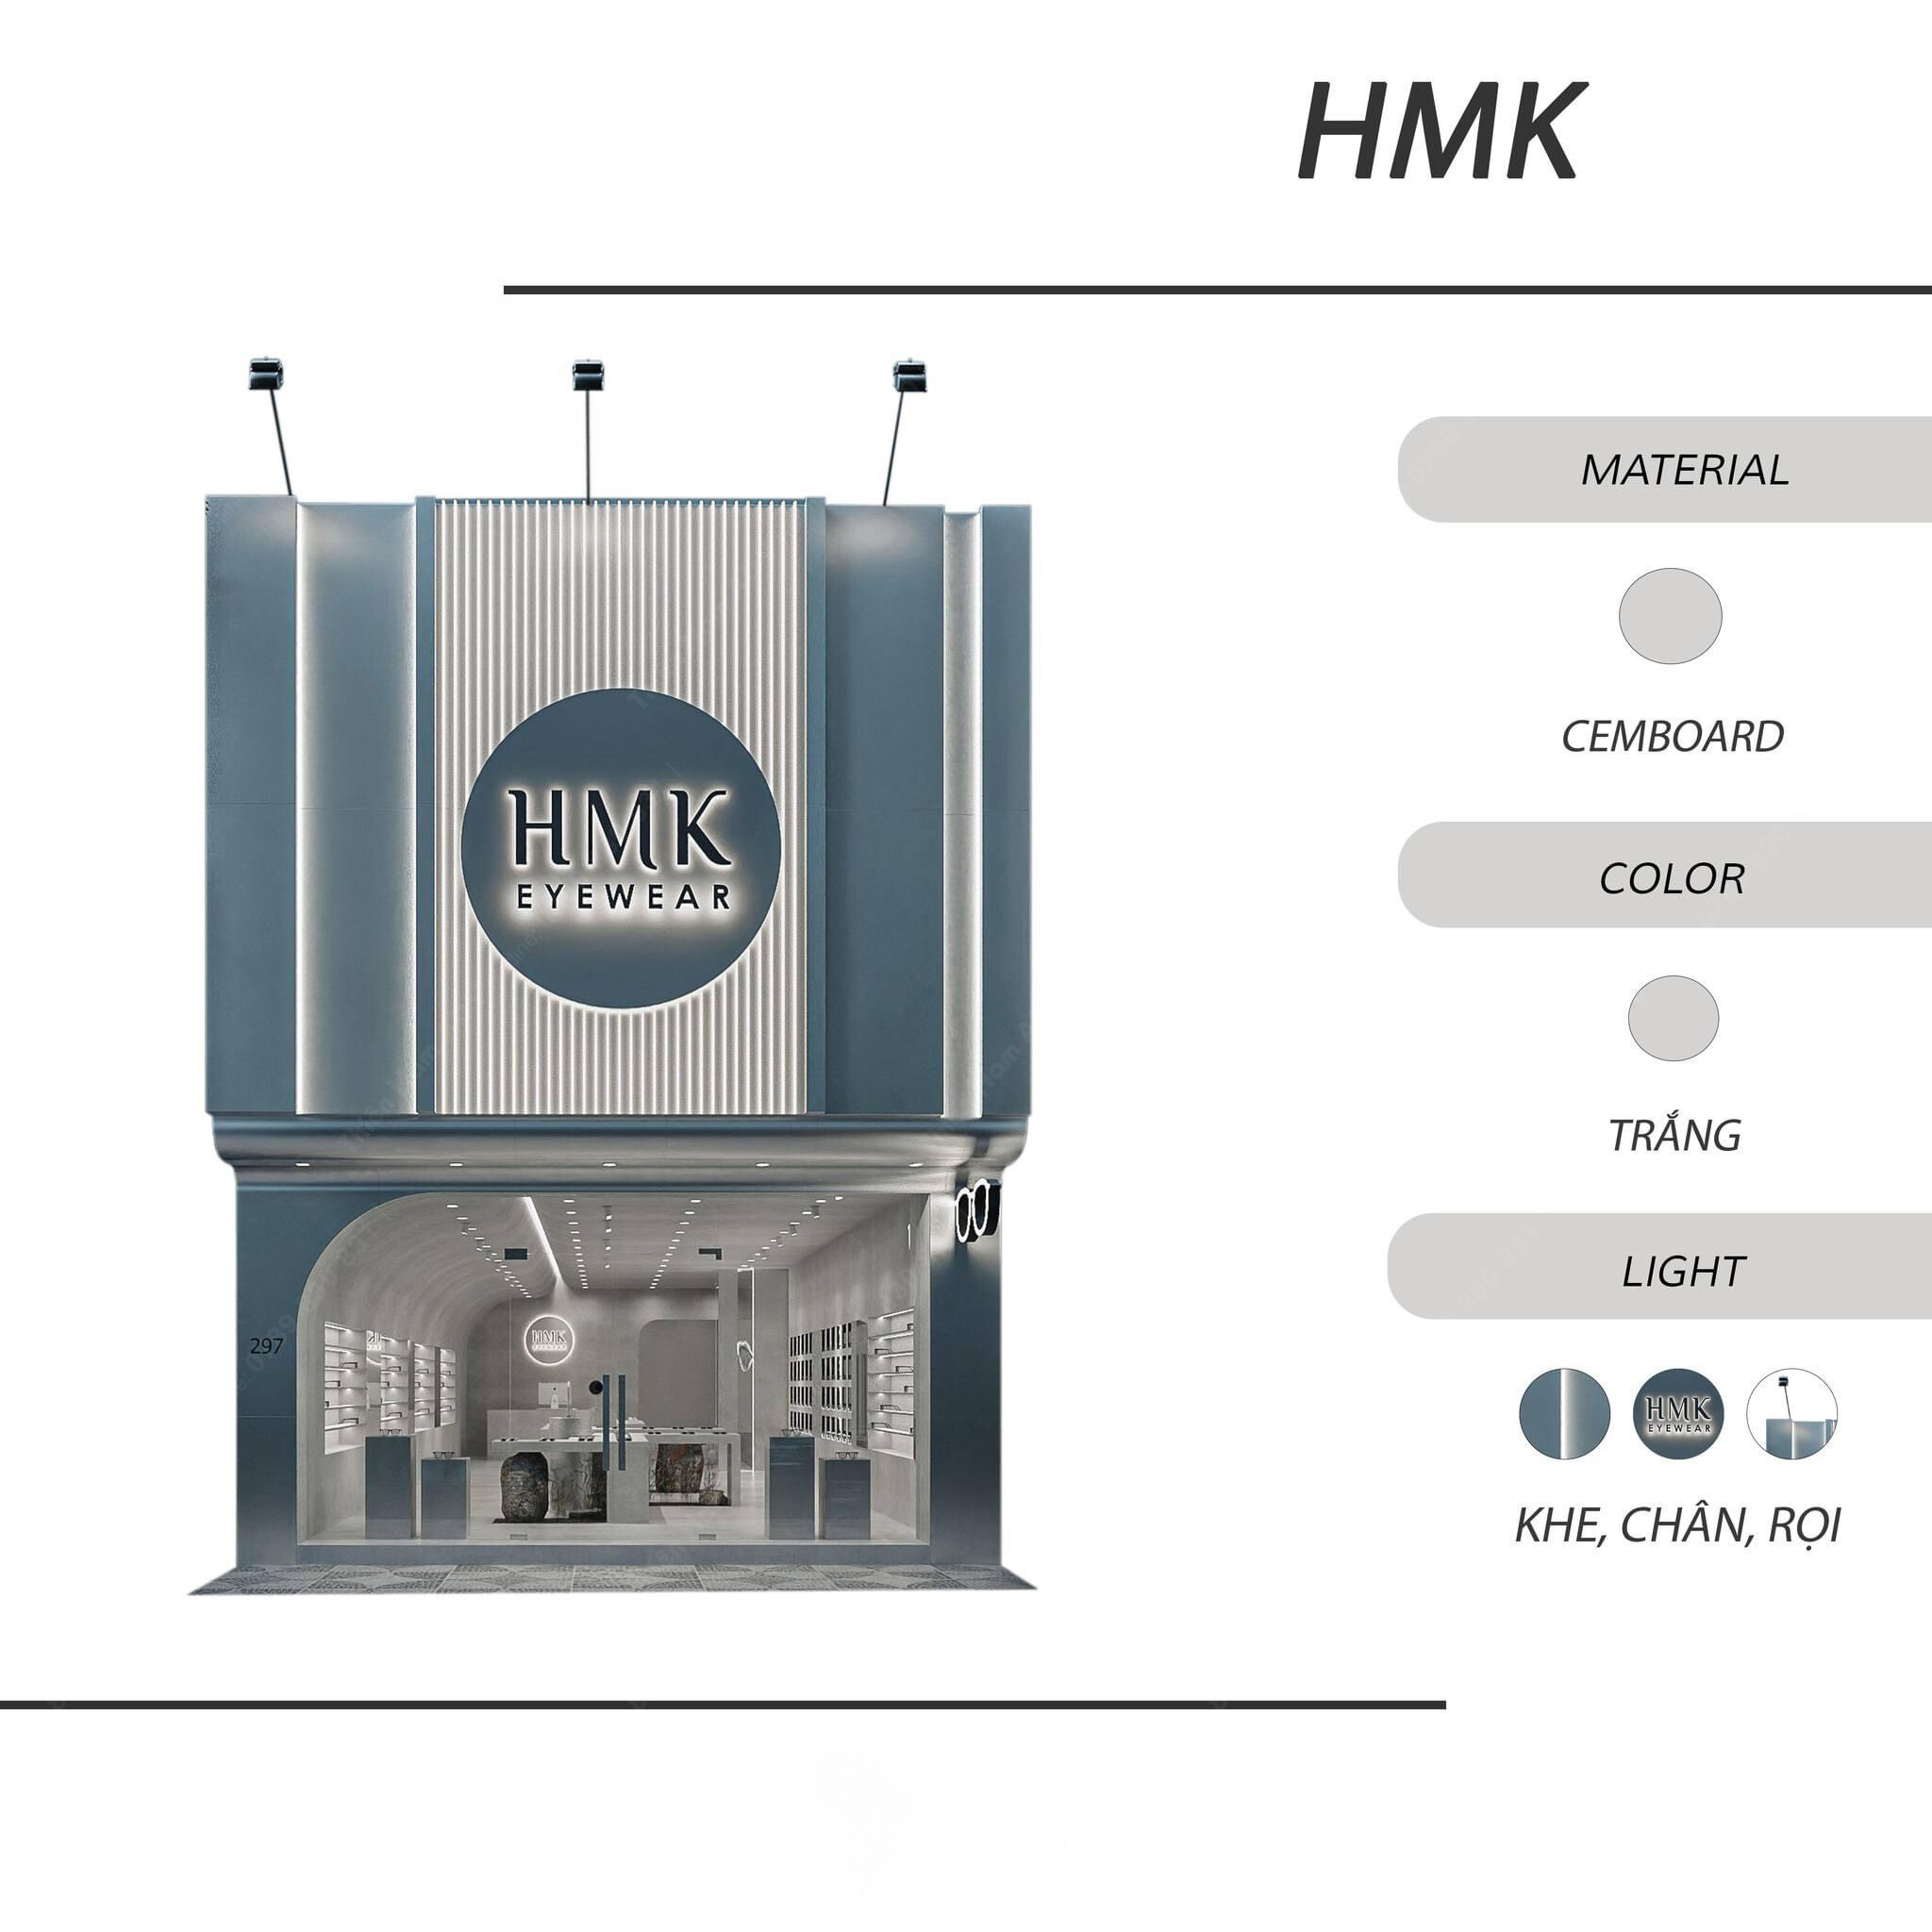 Thiết kế bảng hiệu mặt tiền cửa hàng mắt kính HMK hiện đại, phong cách